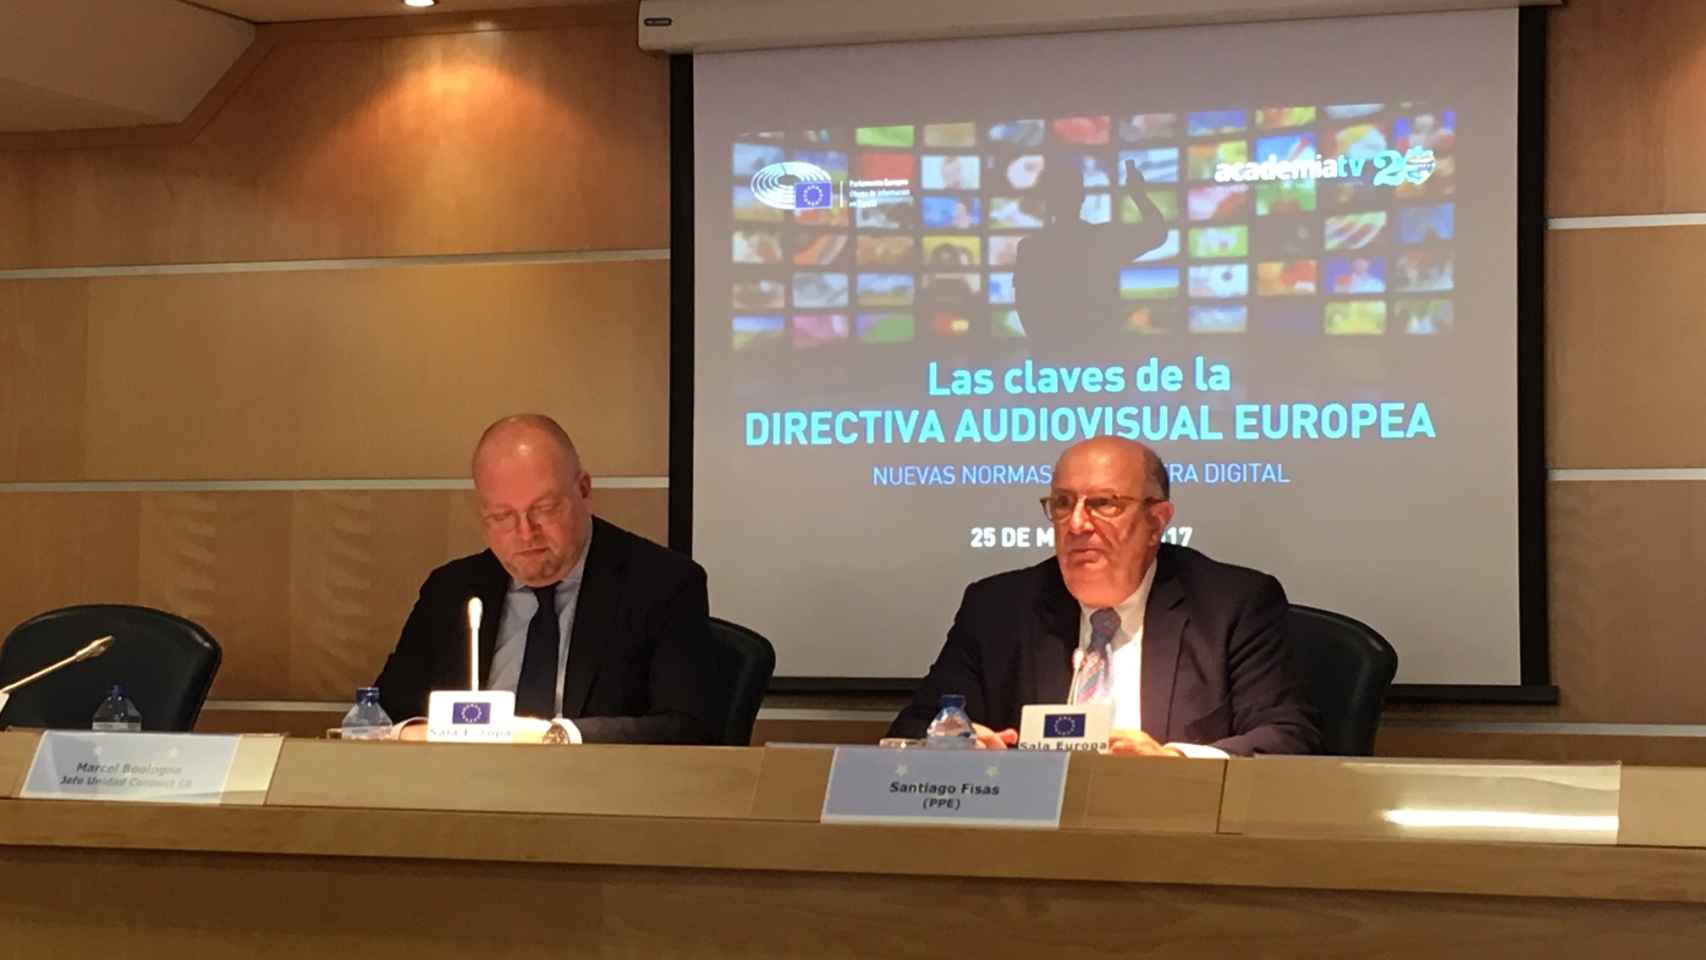 Marcel Boulogne (Comisión Europea) y Santiago Pisas (PPE) durante la jornada Las claves de la Directiva Audiovisual Europea